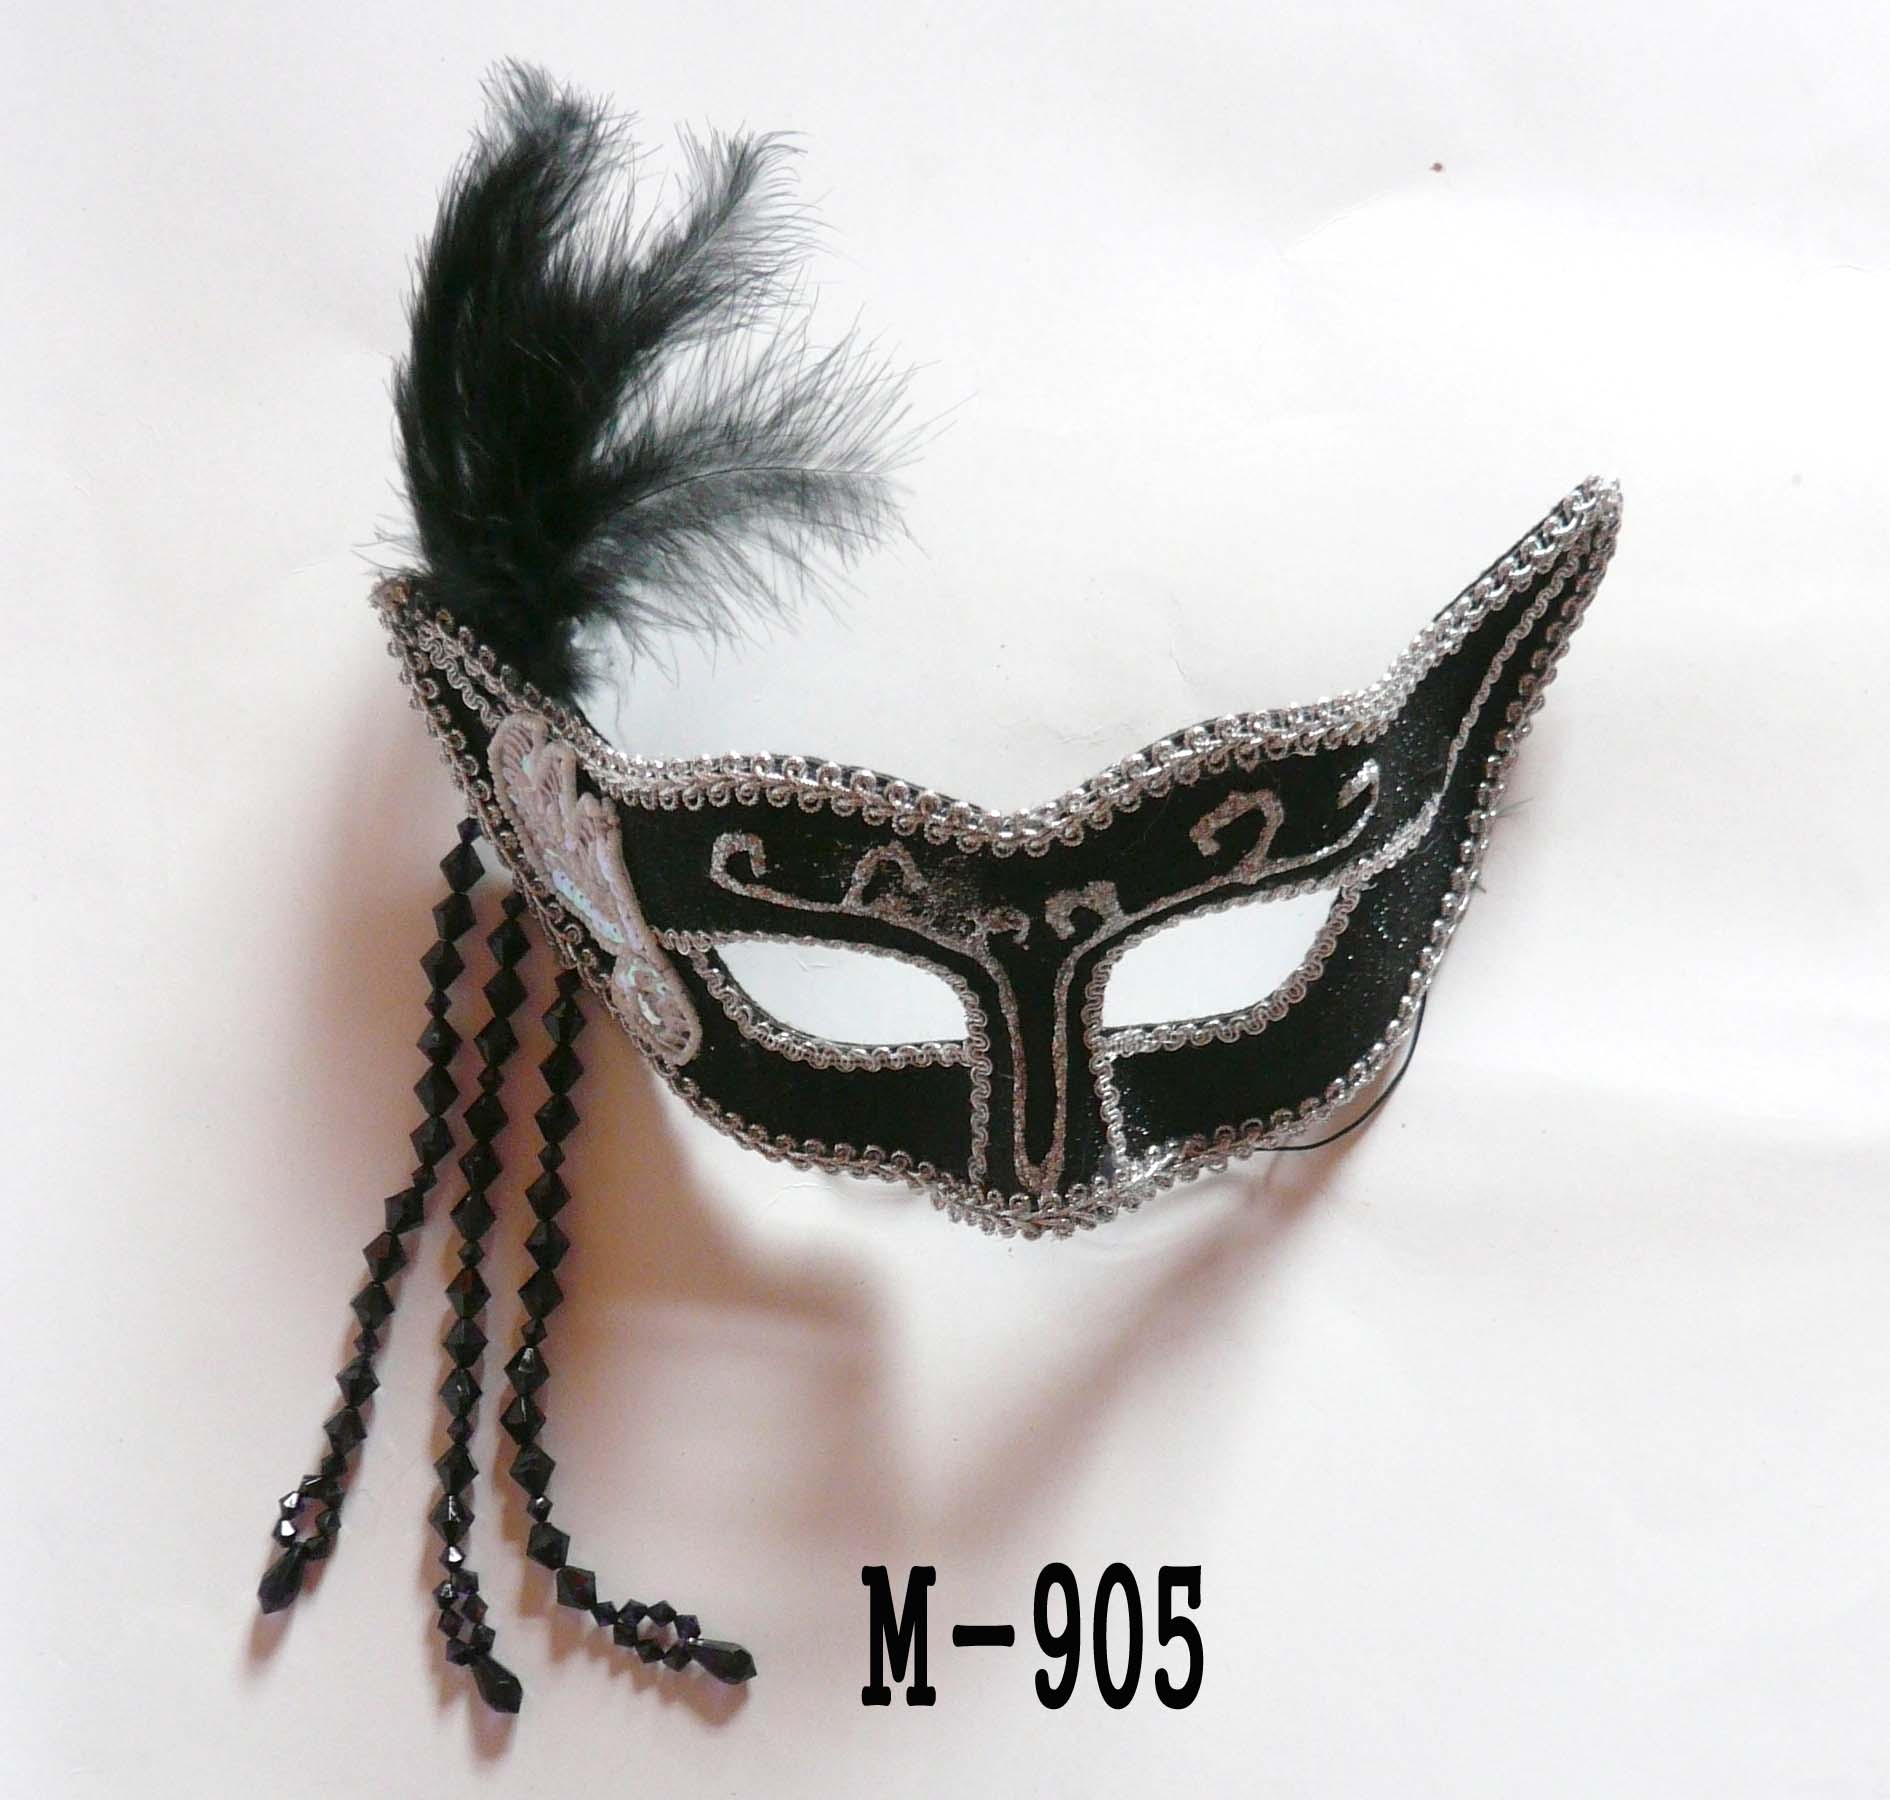  Дешевые маски из перьев для продажи - Сделано в Китае M-905